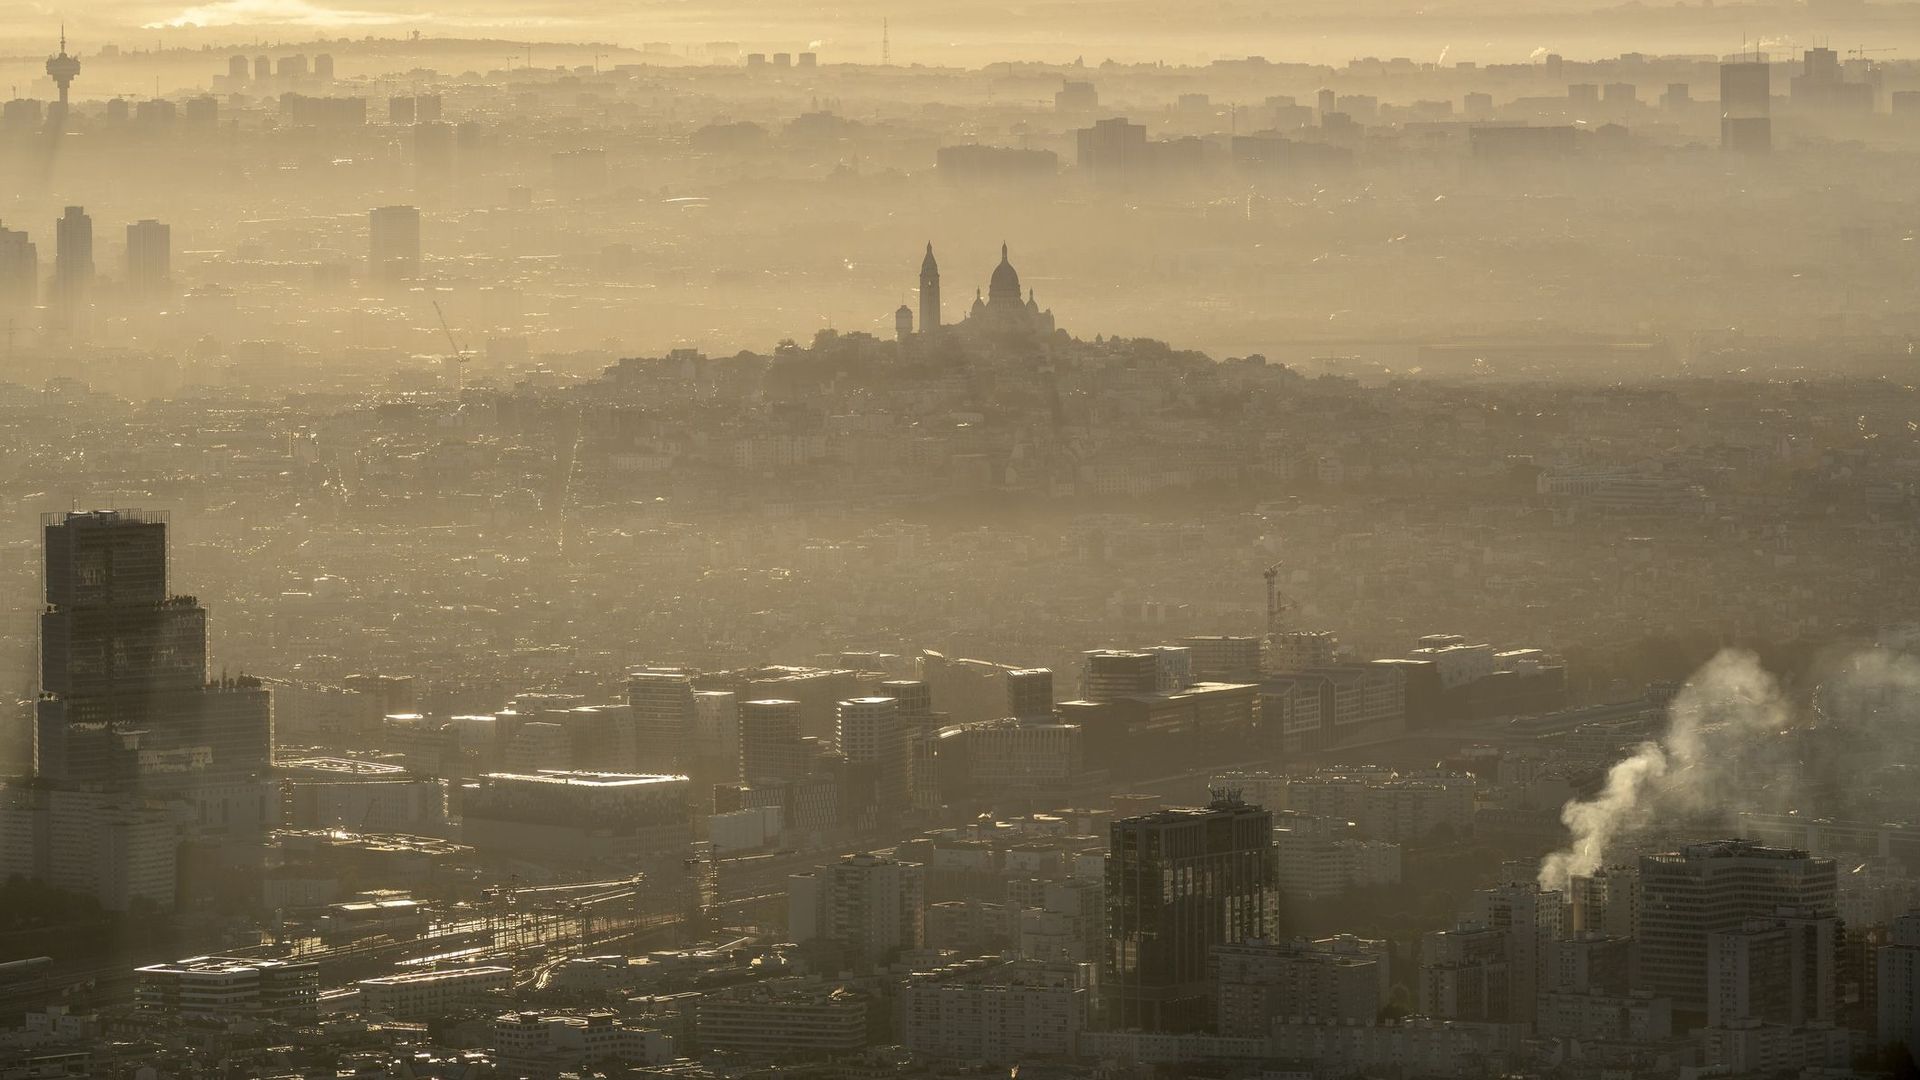 La pollution de l'air coûte 166 milliards d'euros par an en Europe (rapport)